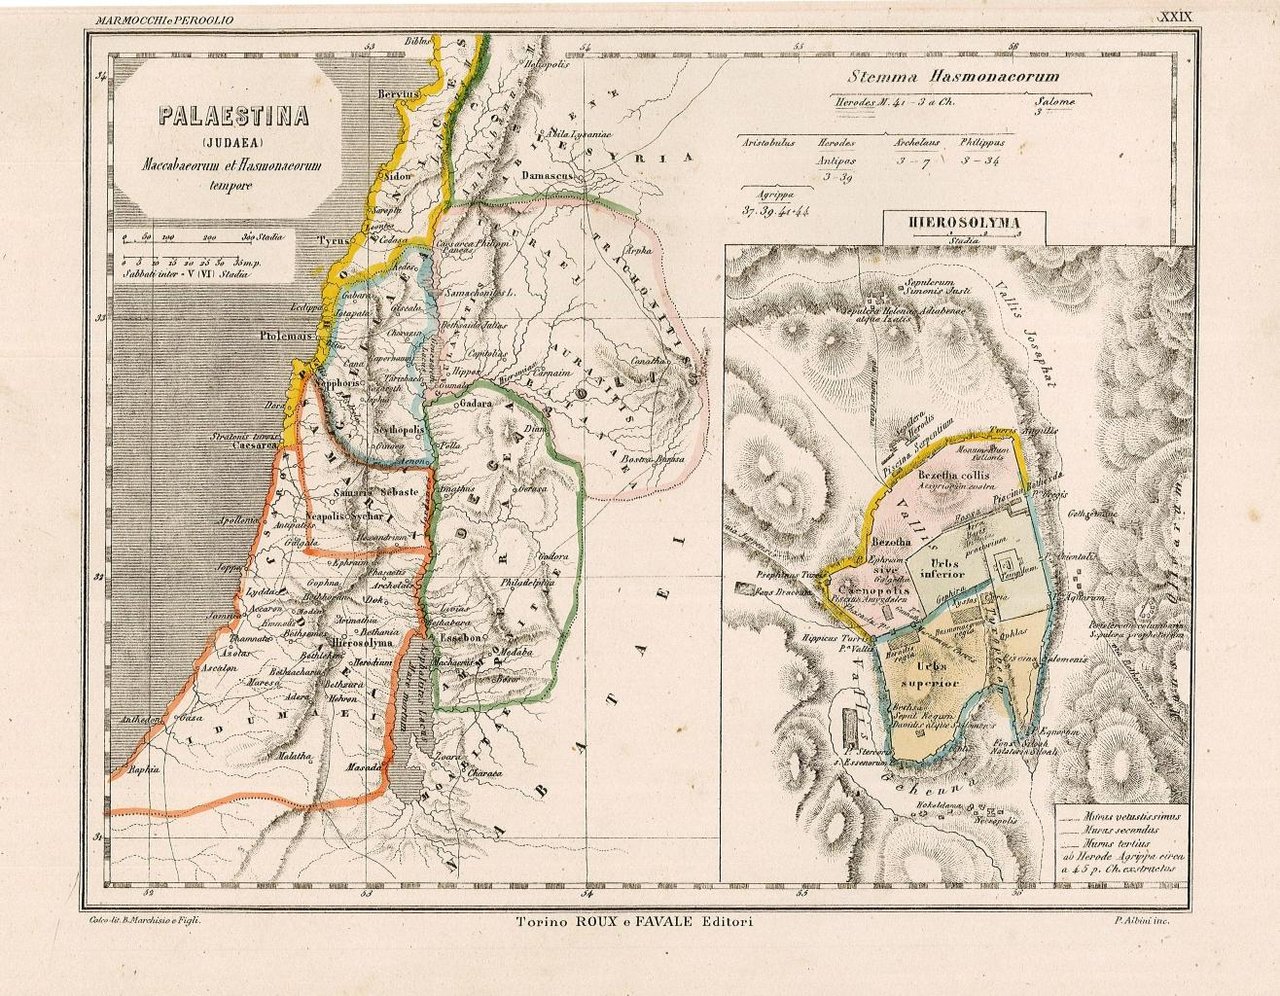 Palestina (Judaea) Maccabaeorum et Hasmonaeorum tempore